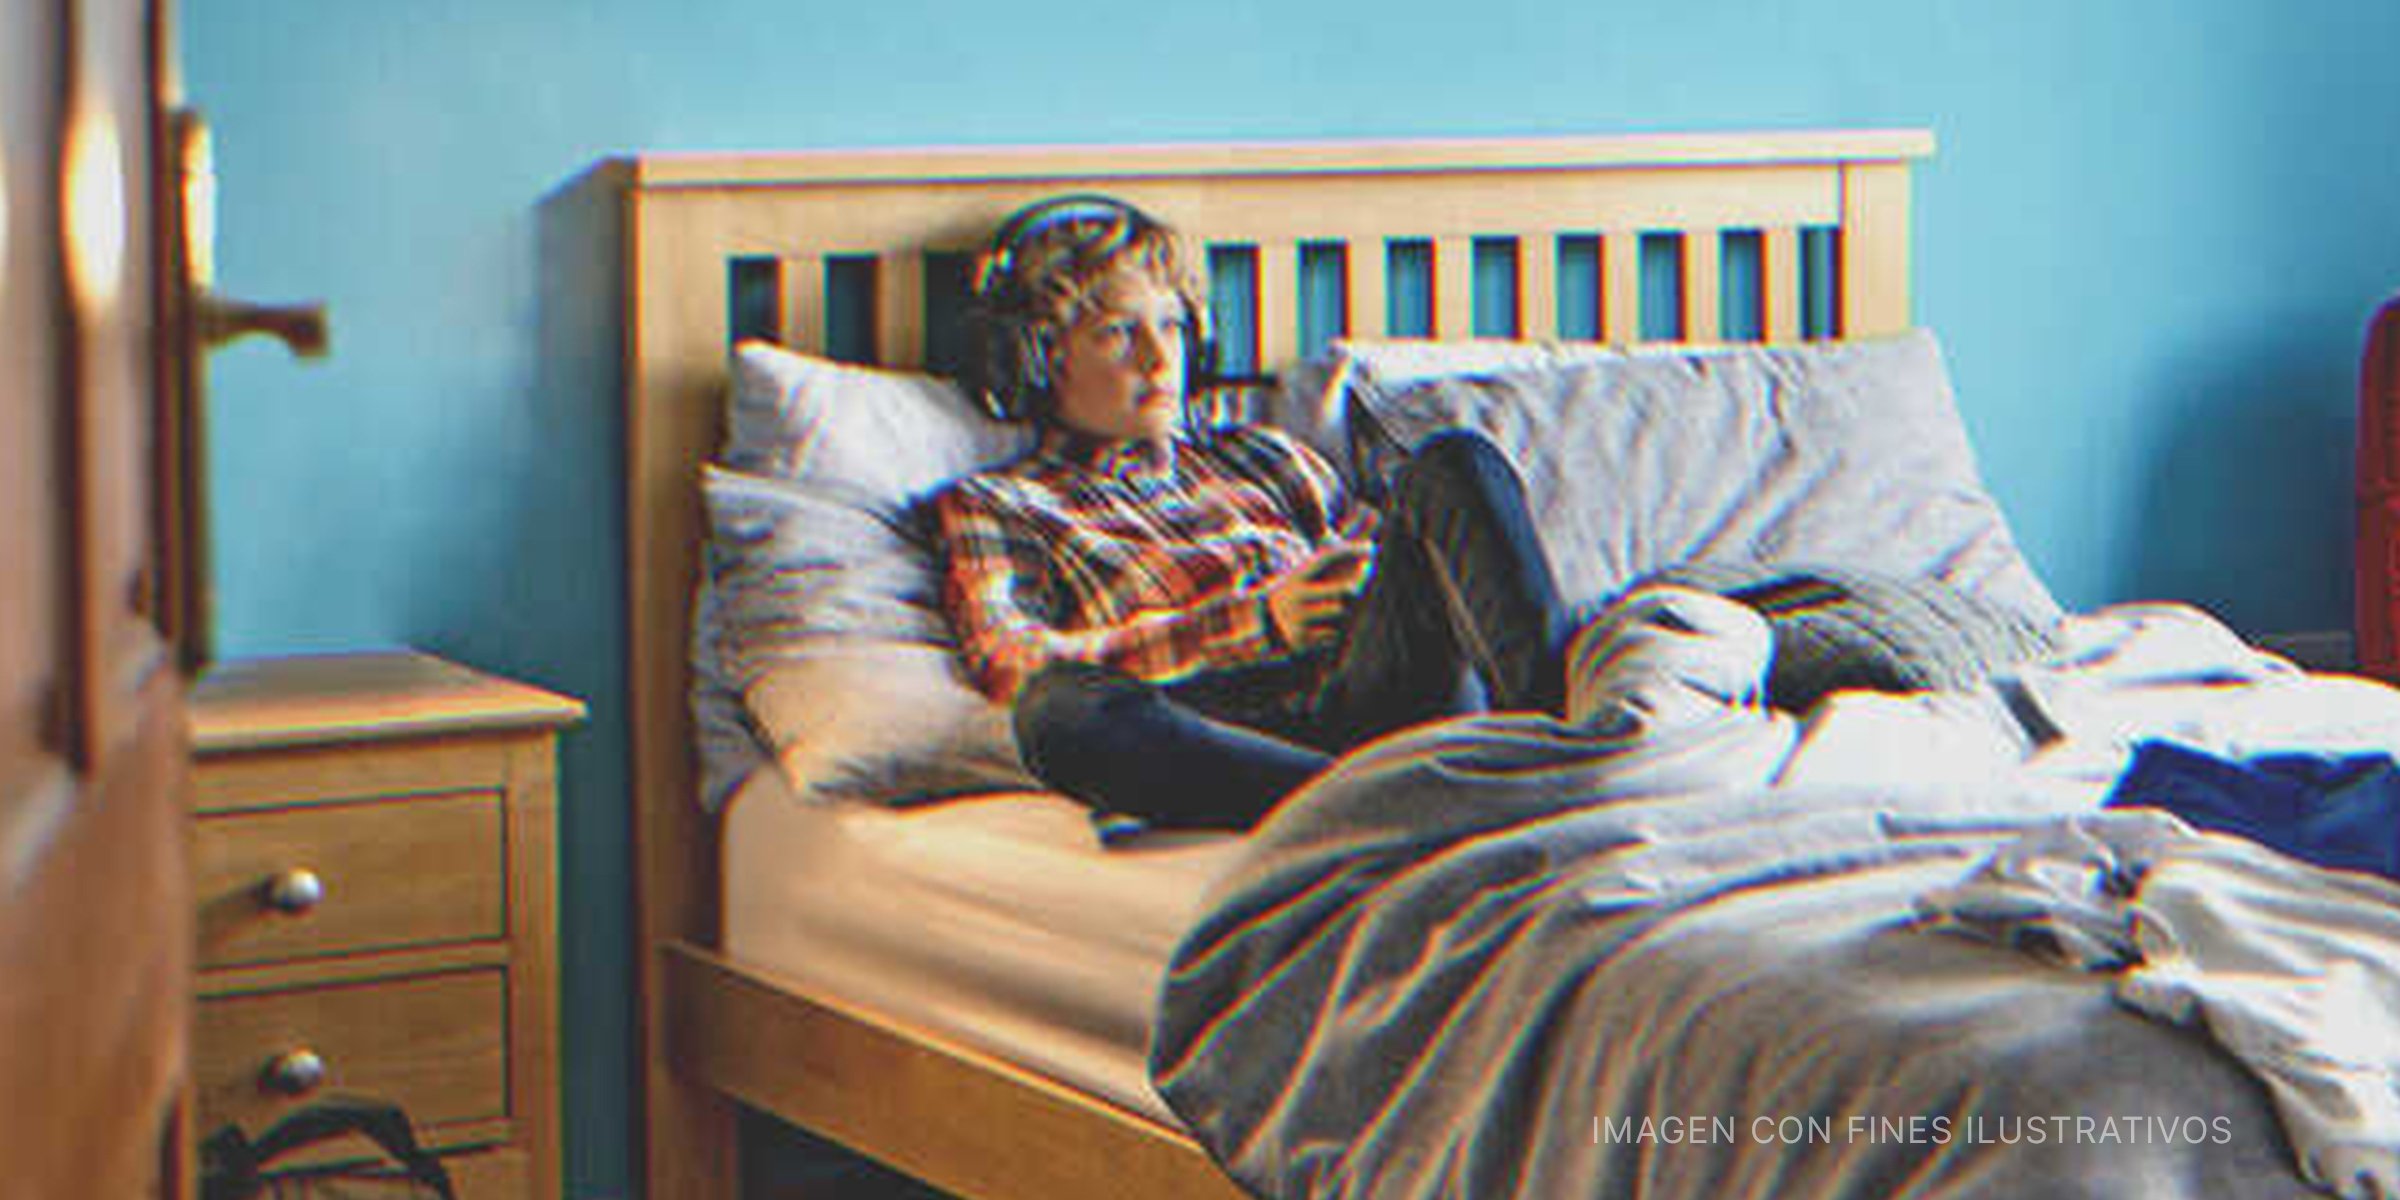 Chico en su cama. | Getty Images